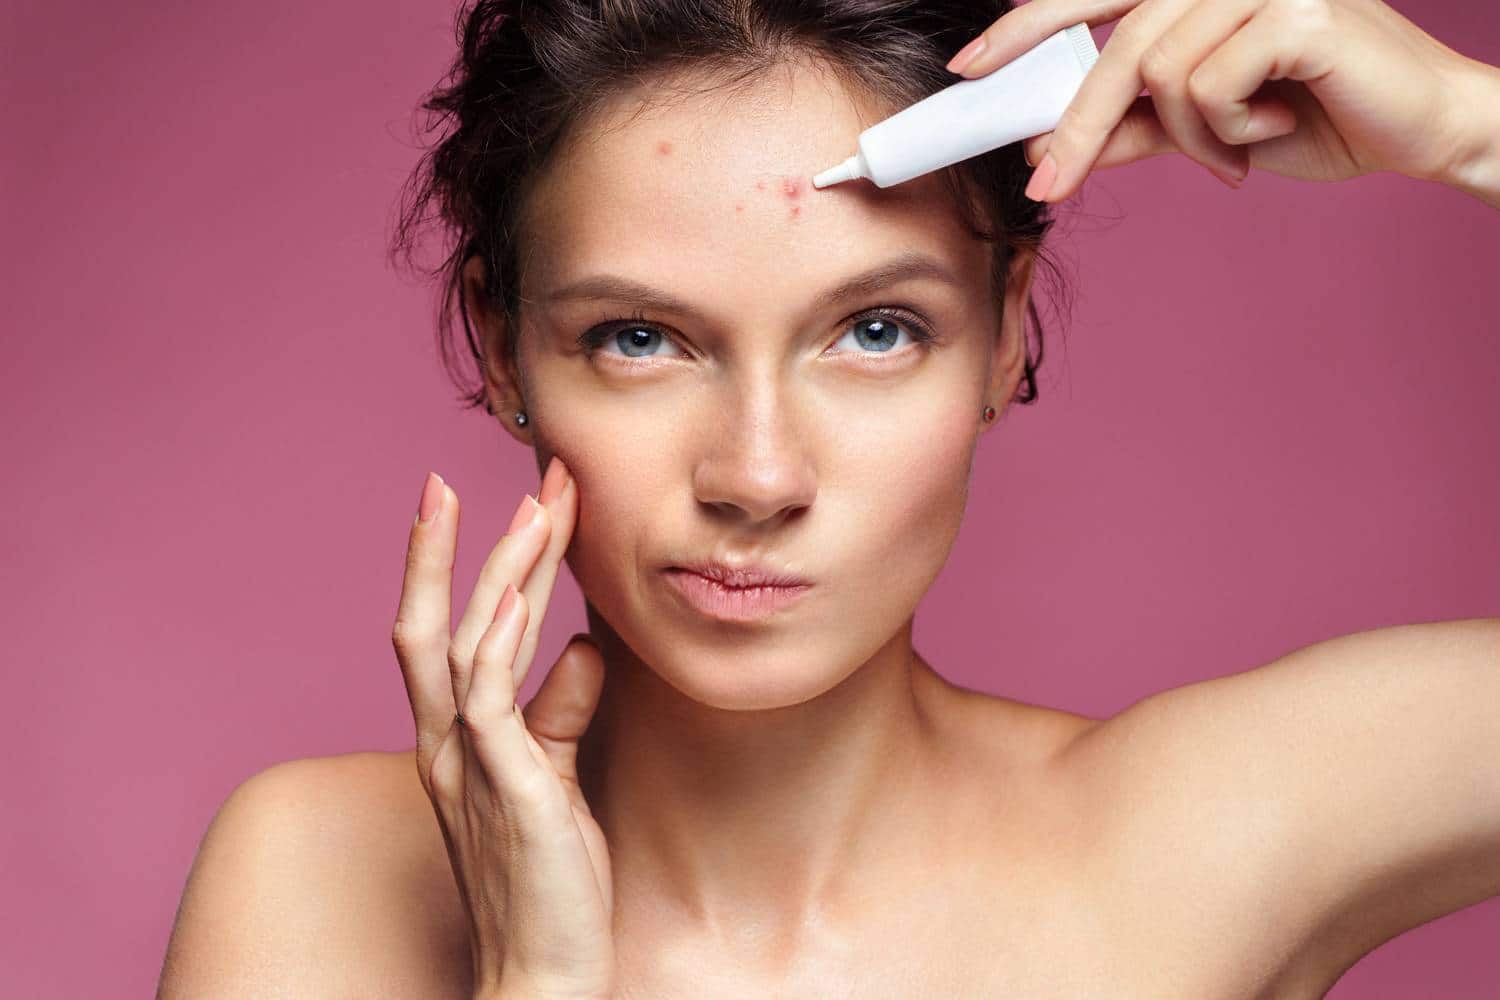 comment traiter acné adulte